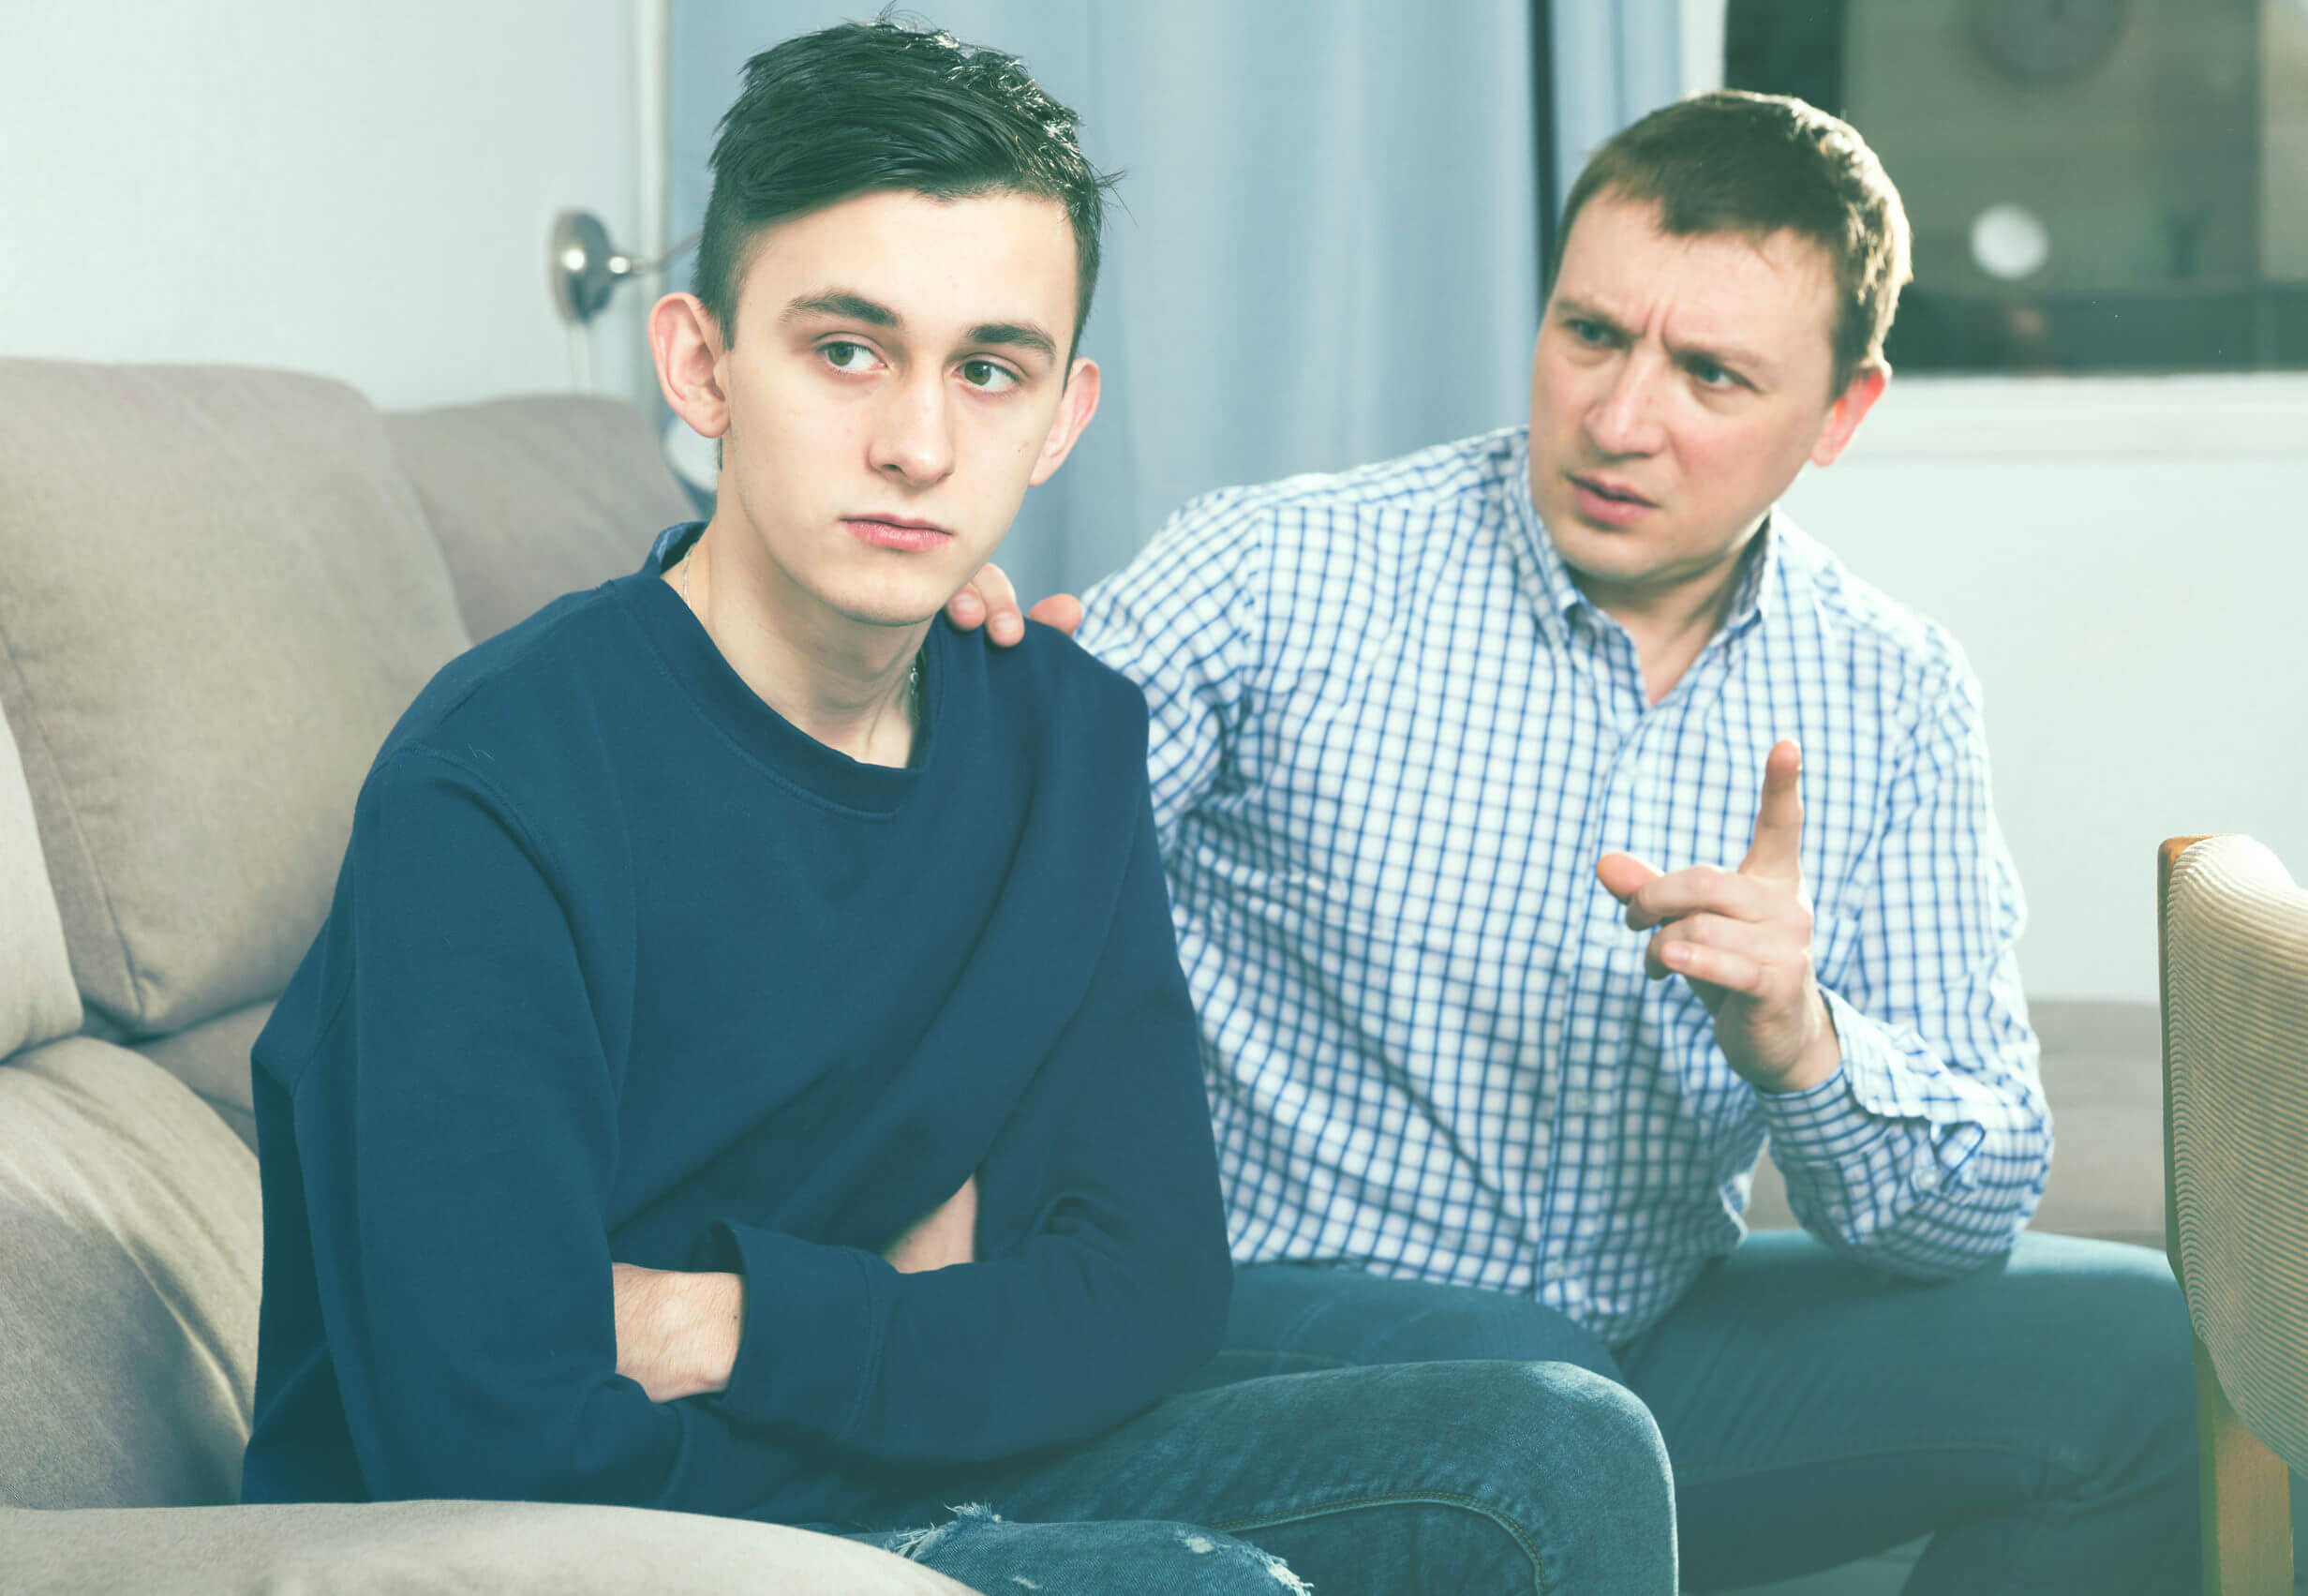 Padre hablando con su hijo adolescente sobre los límites porque dentro de él sigue habiendo un niño.